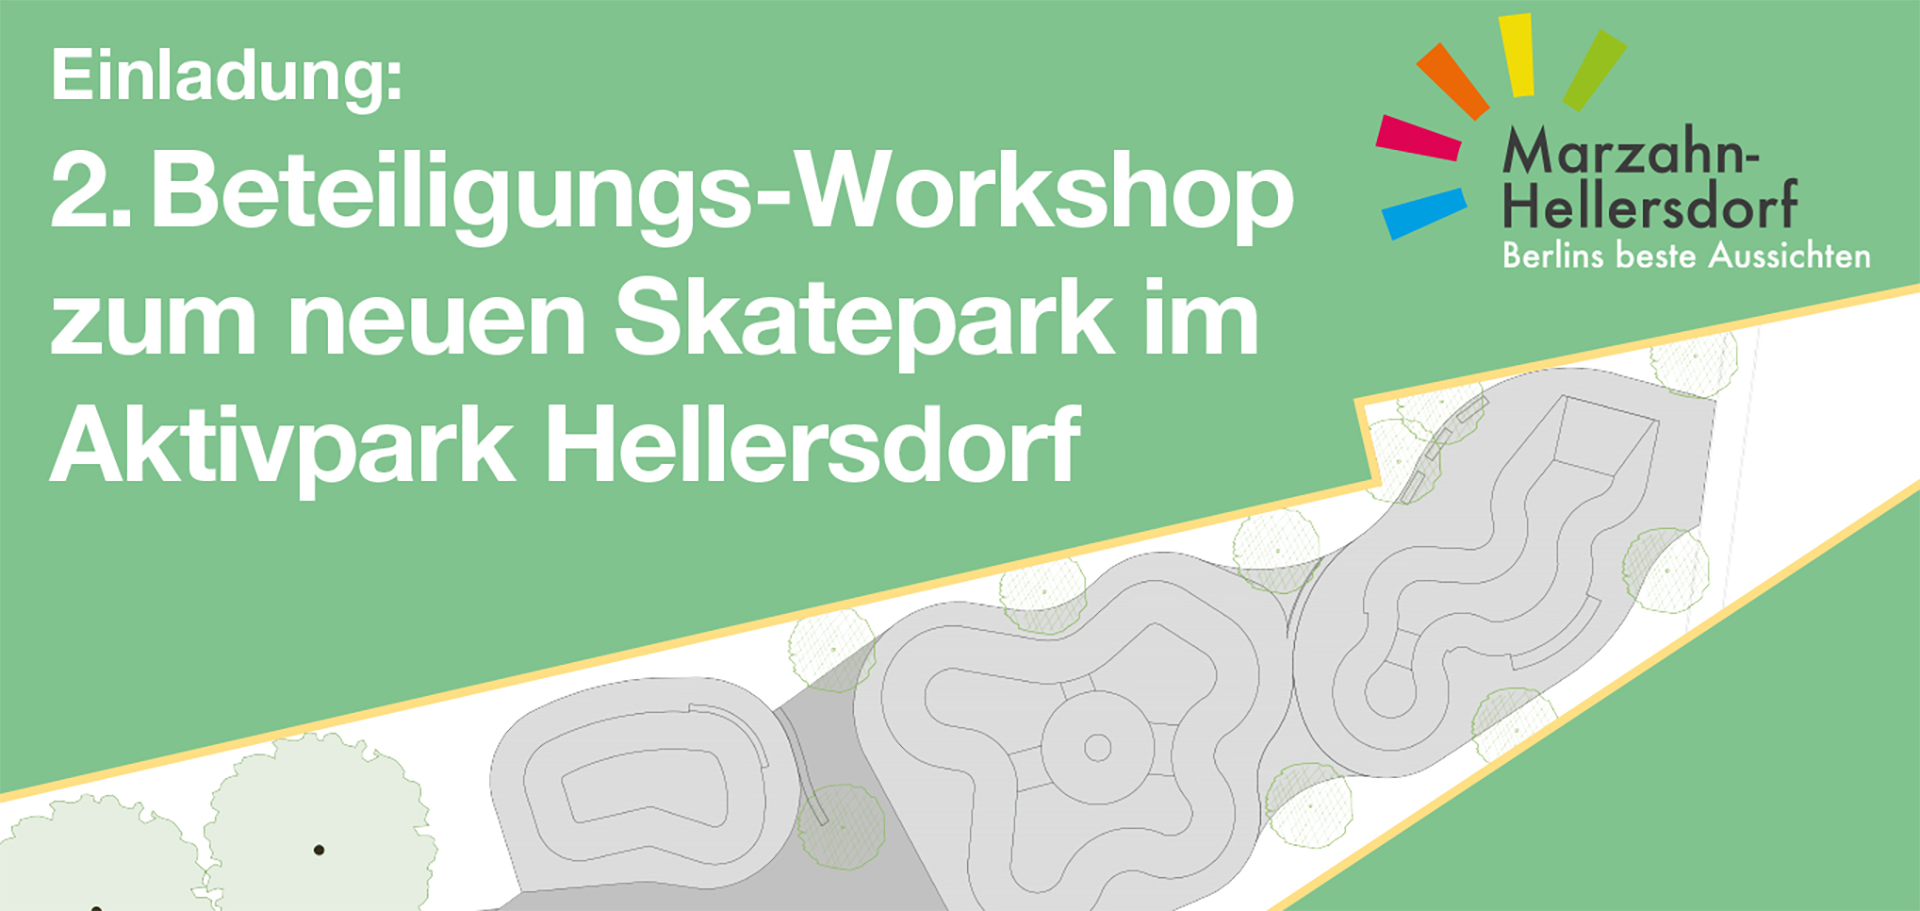 Berlin-Hellersdorf - Skatepark - 2. Beteiligungsorkshop